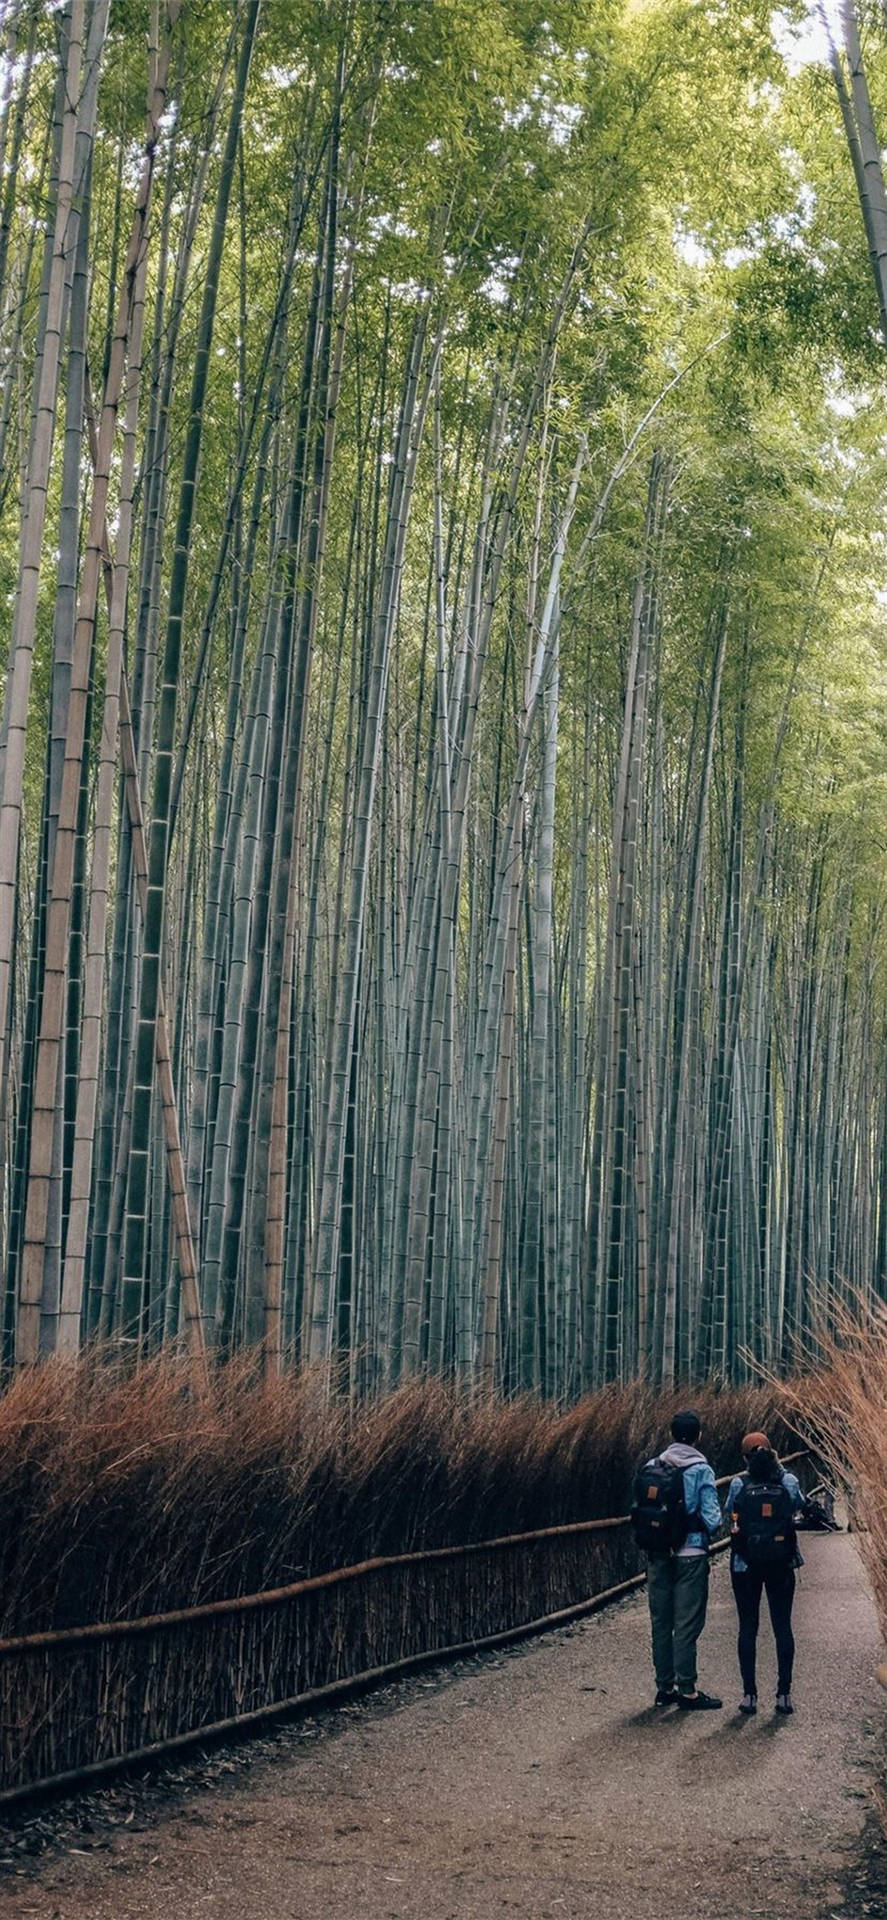 Paarauf Einem Bambusweg Iphone Wallpaper